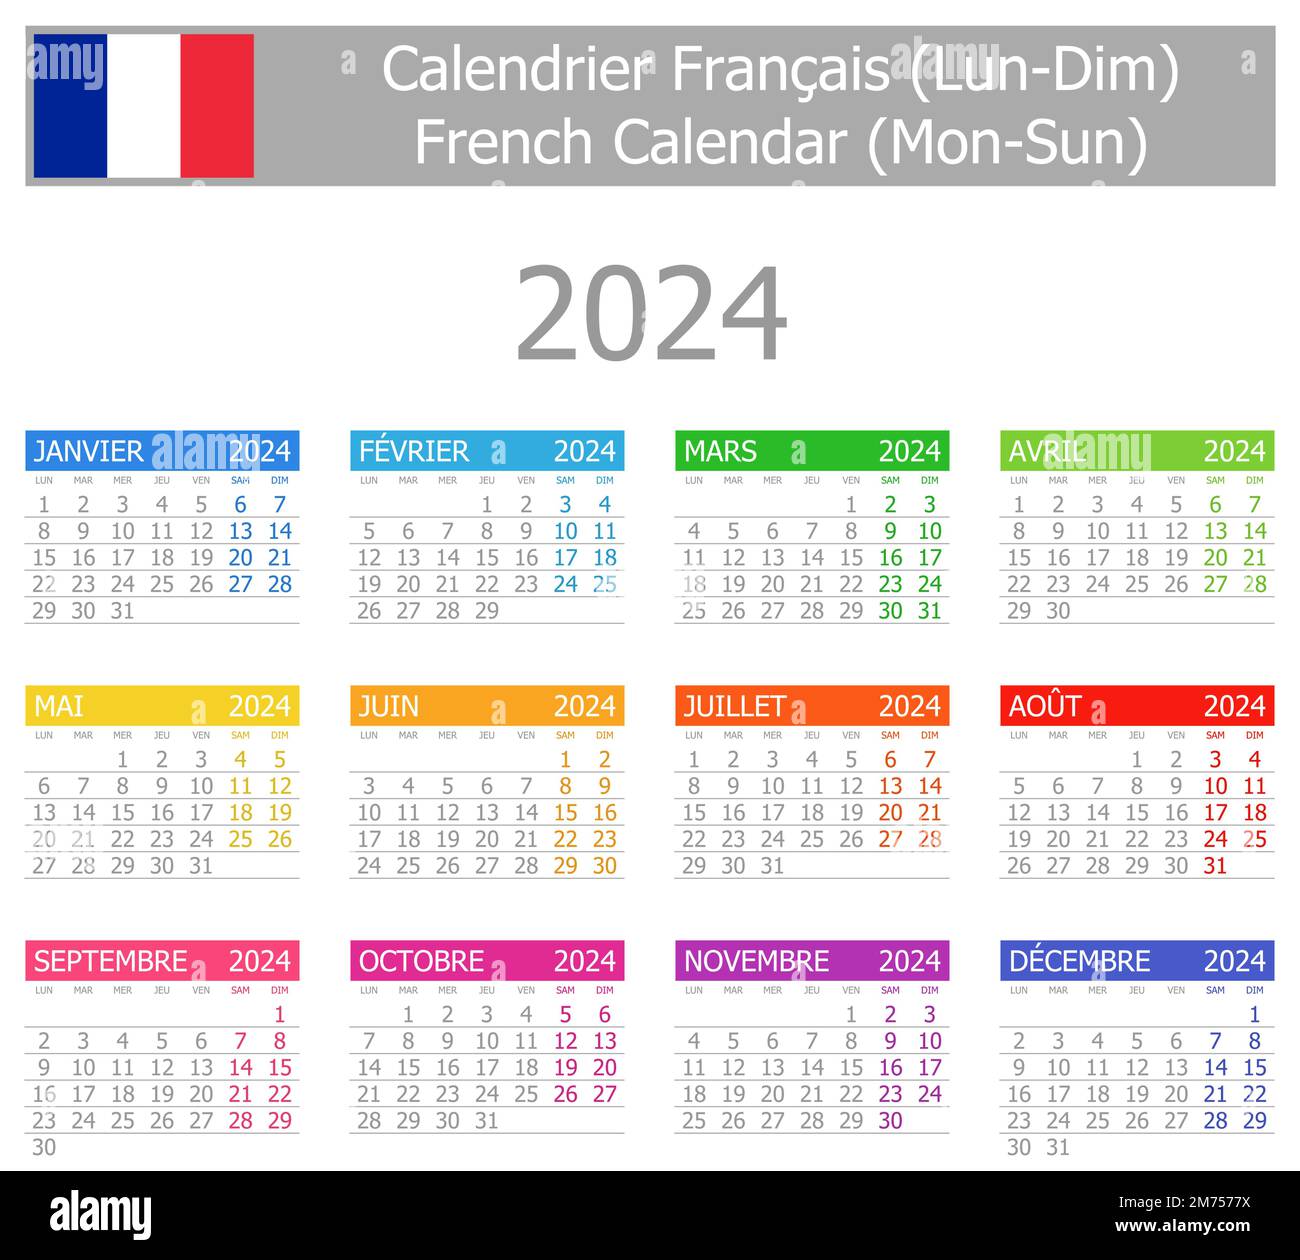 2024 French Type1 Calendar MonSun on white background Stock Vector